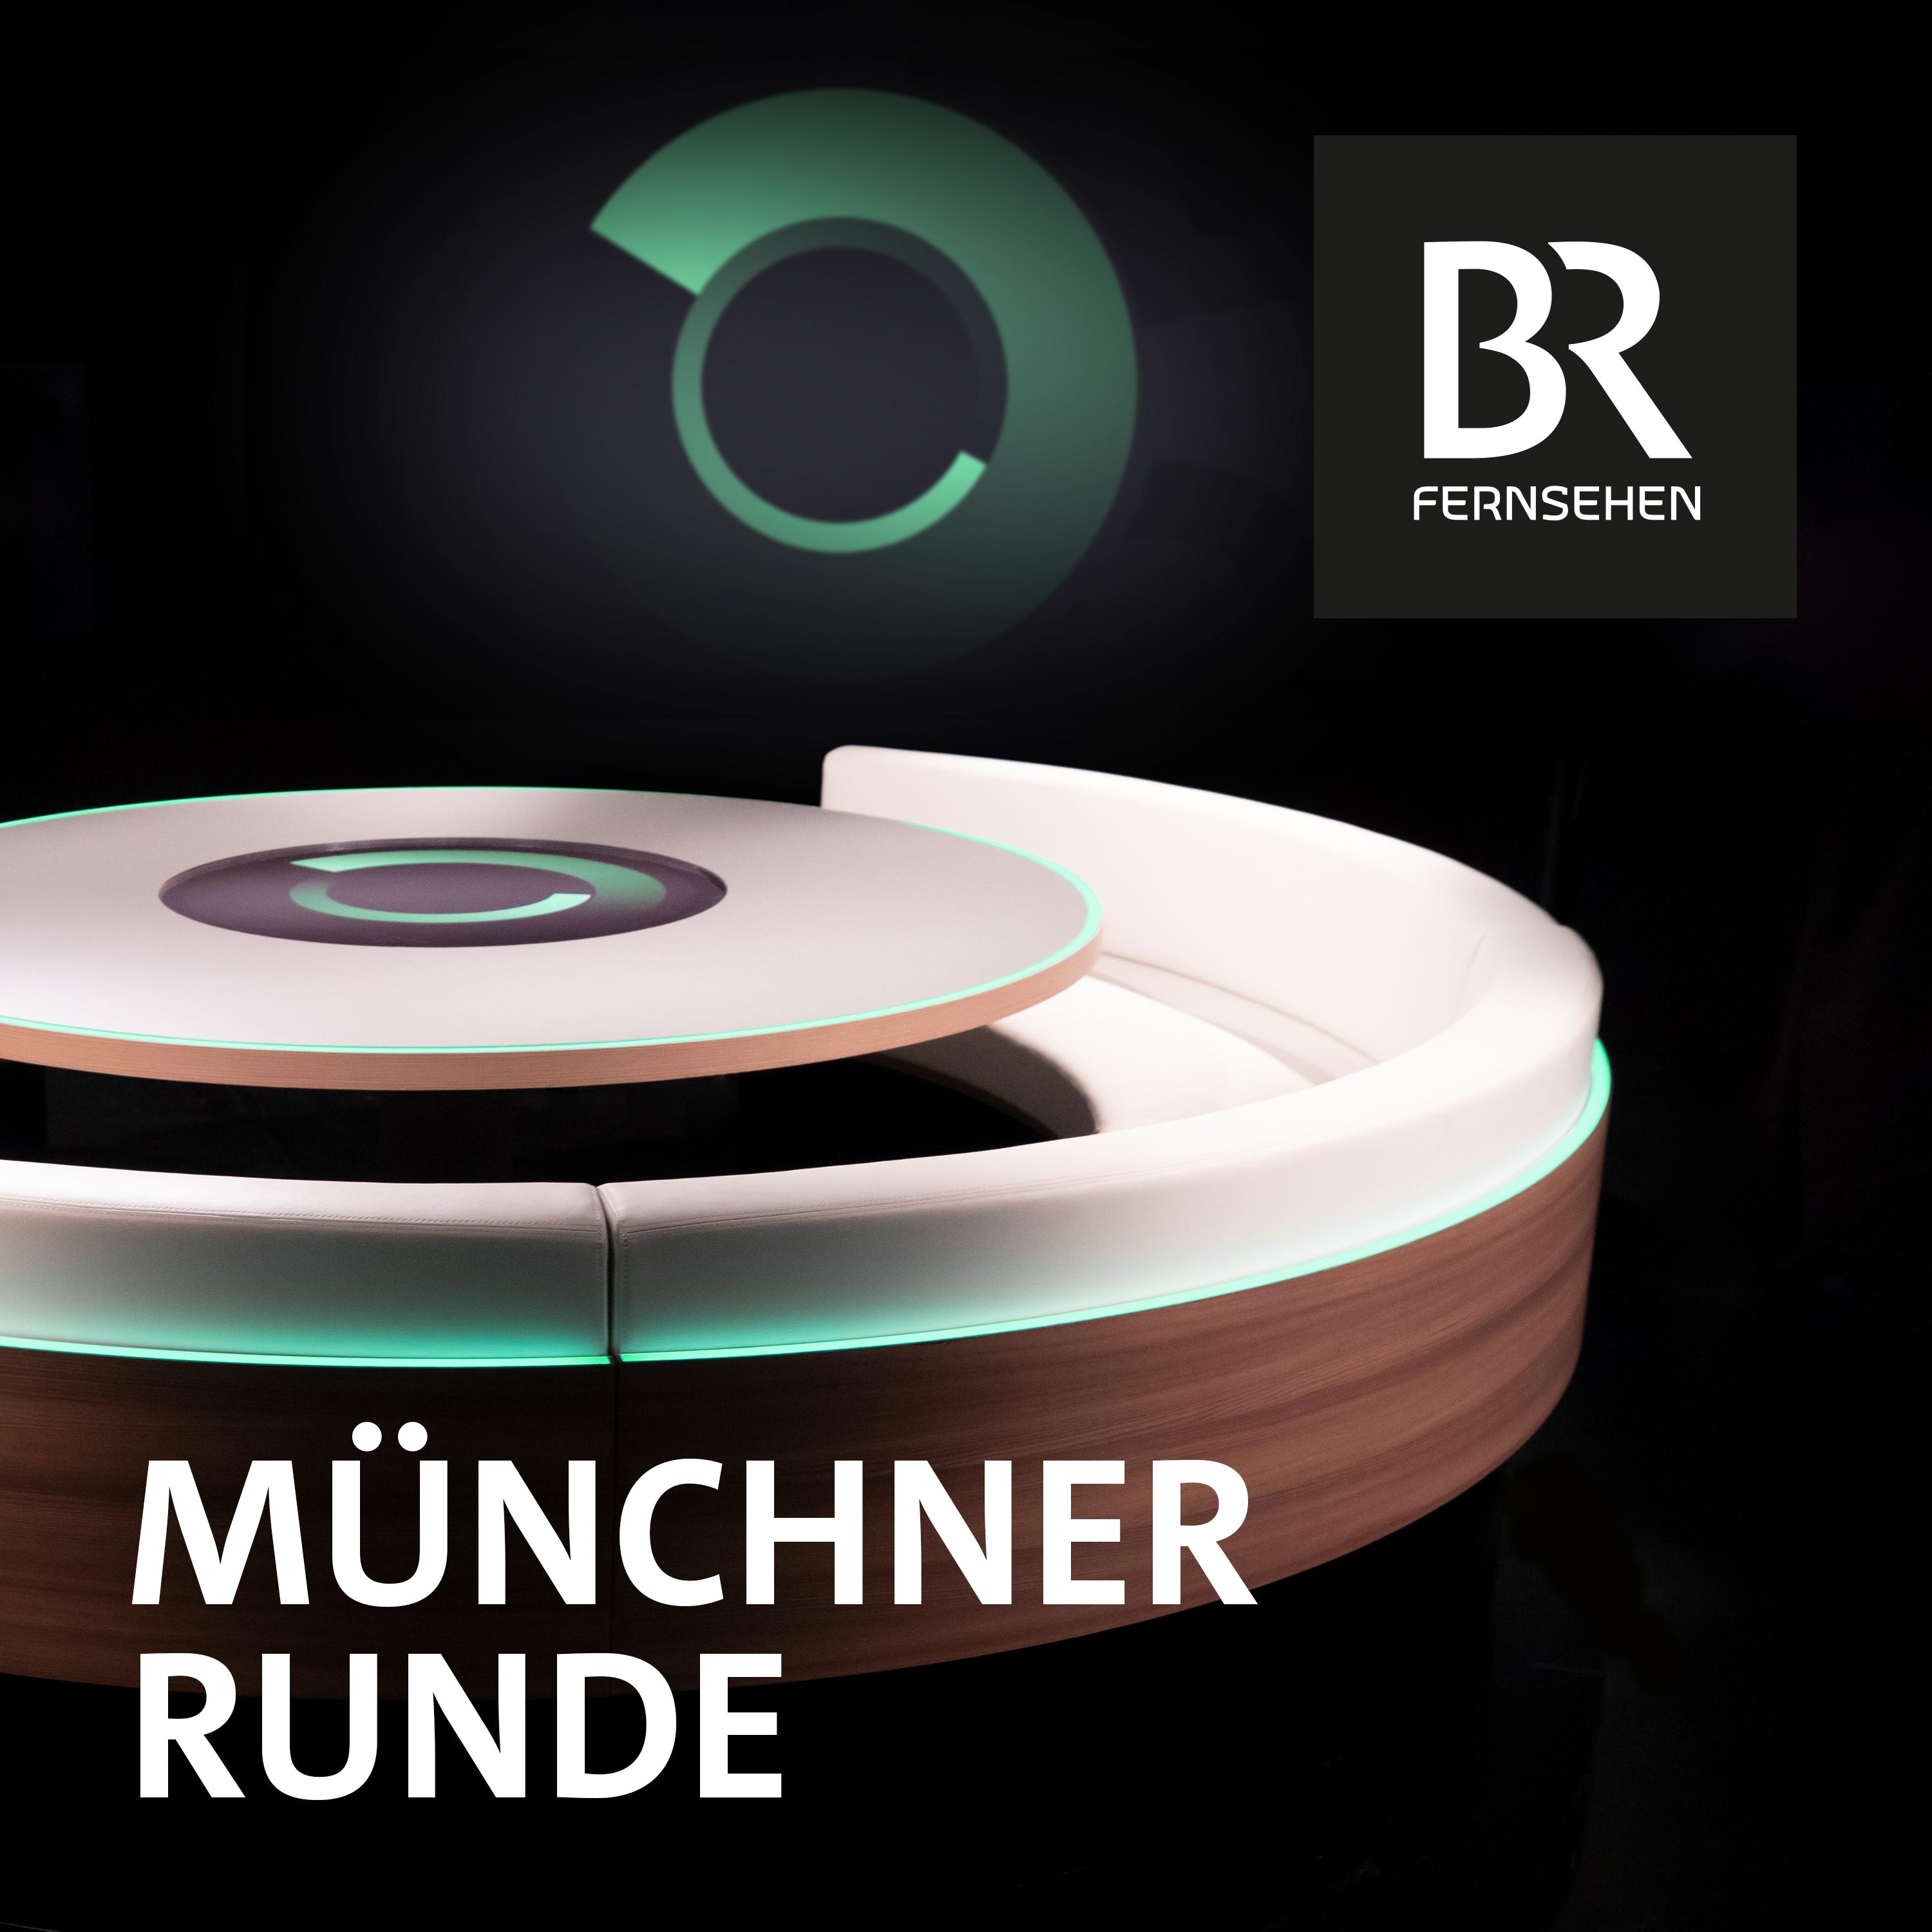 Münchner Runde - Video